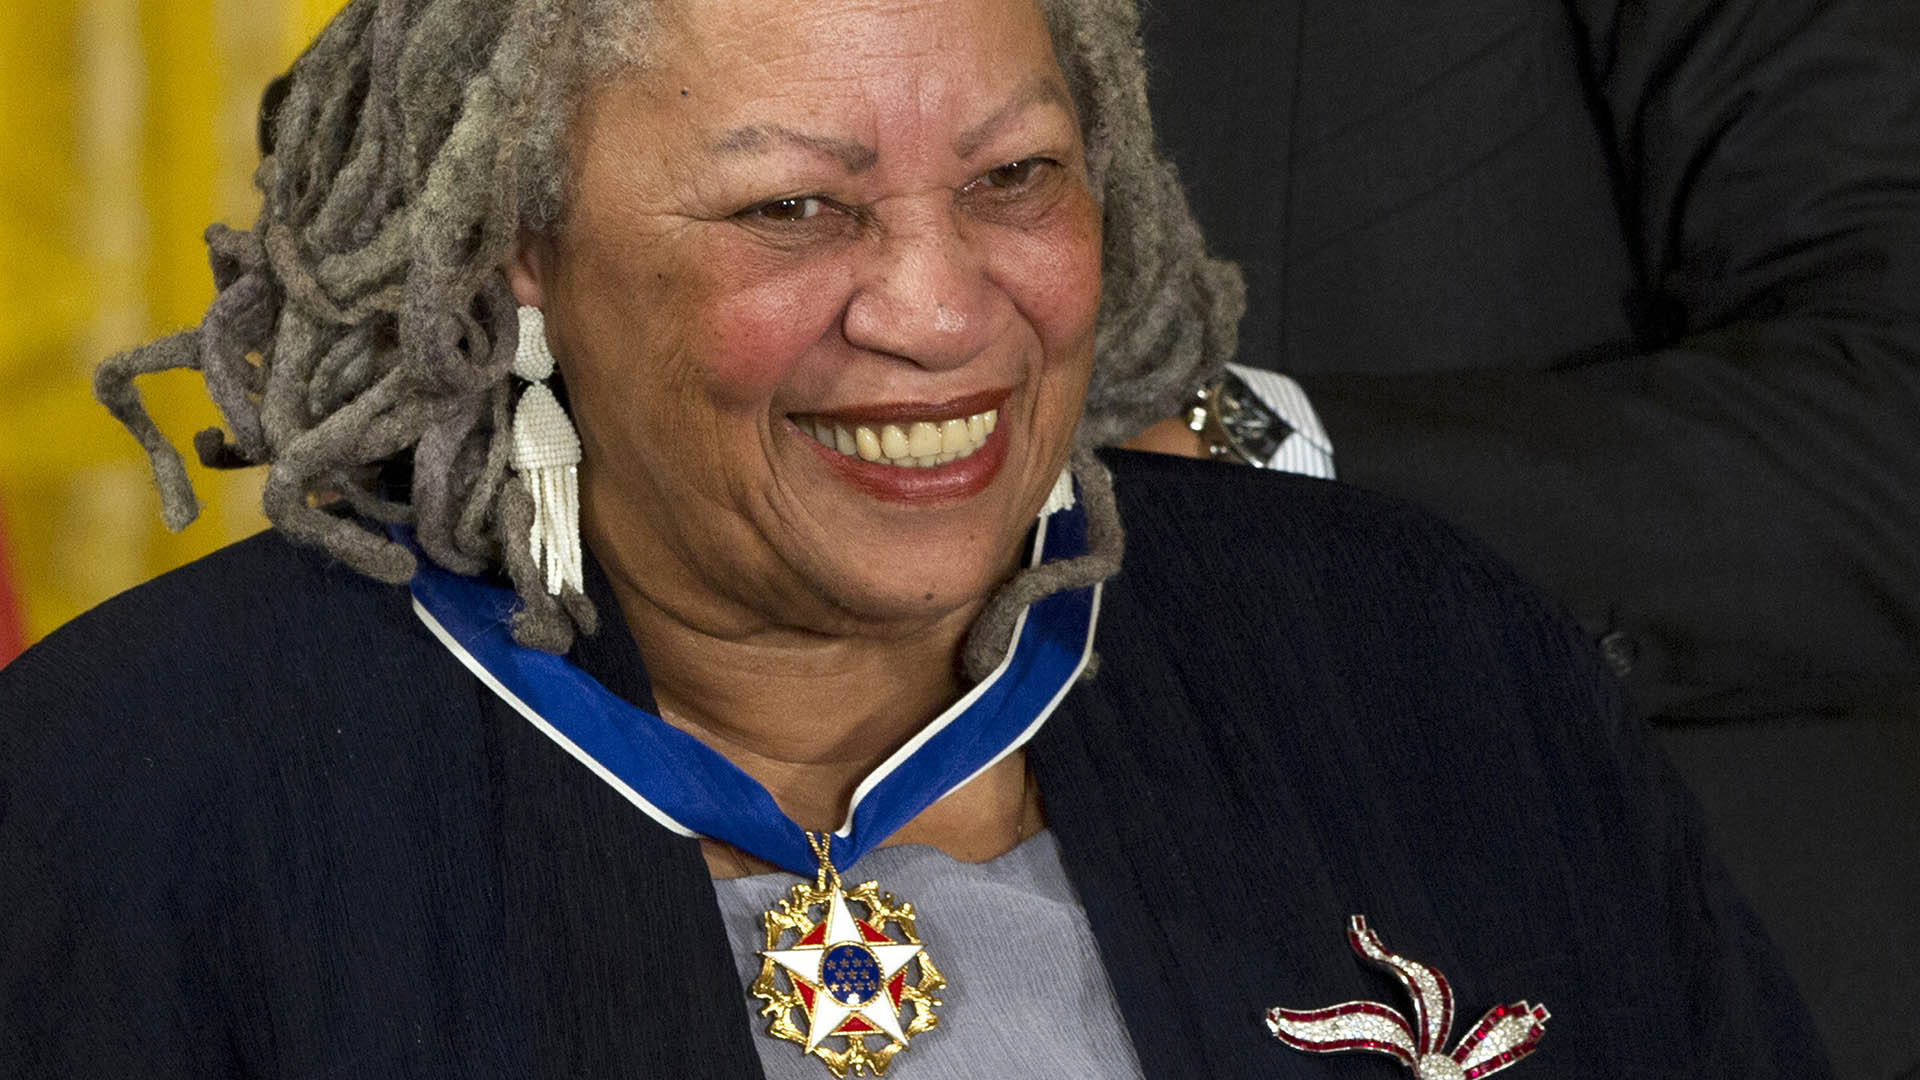 La premio nobel Toni Morrison, que recientemente fue homenajeada con una estampilla por el servicio postal de los Estados Unidos, es otra de las escritoras que han sufrido las restricciones de libros (AP Photo/Carolyn Kaster, File)